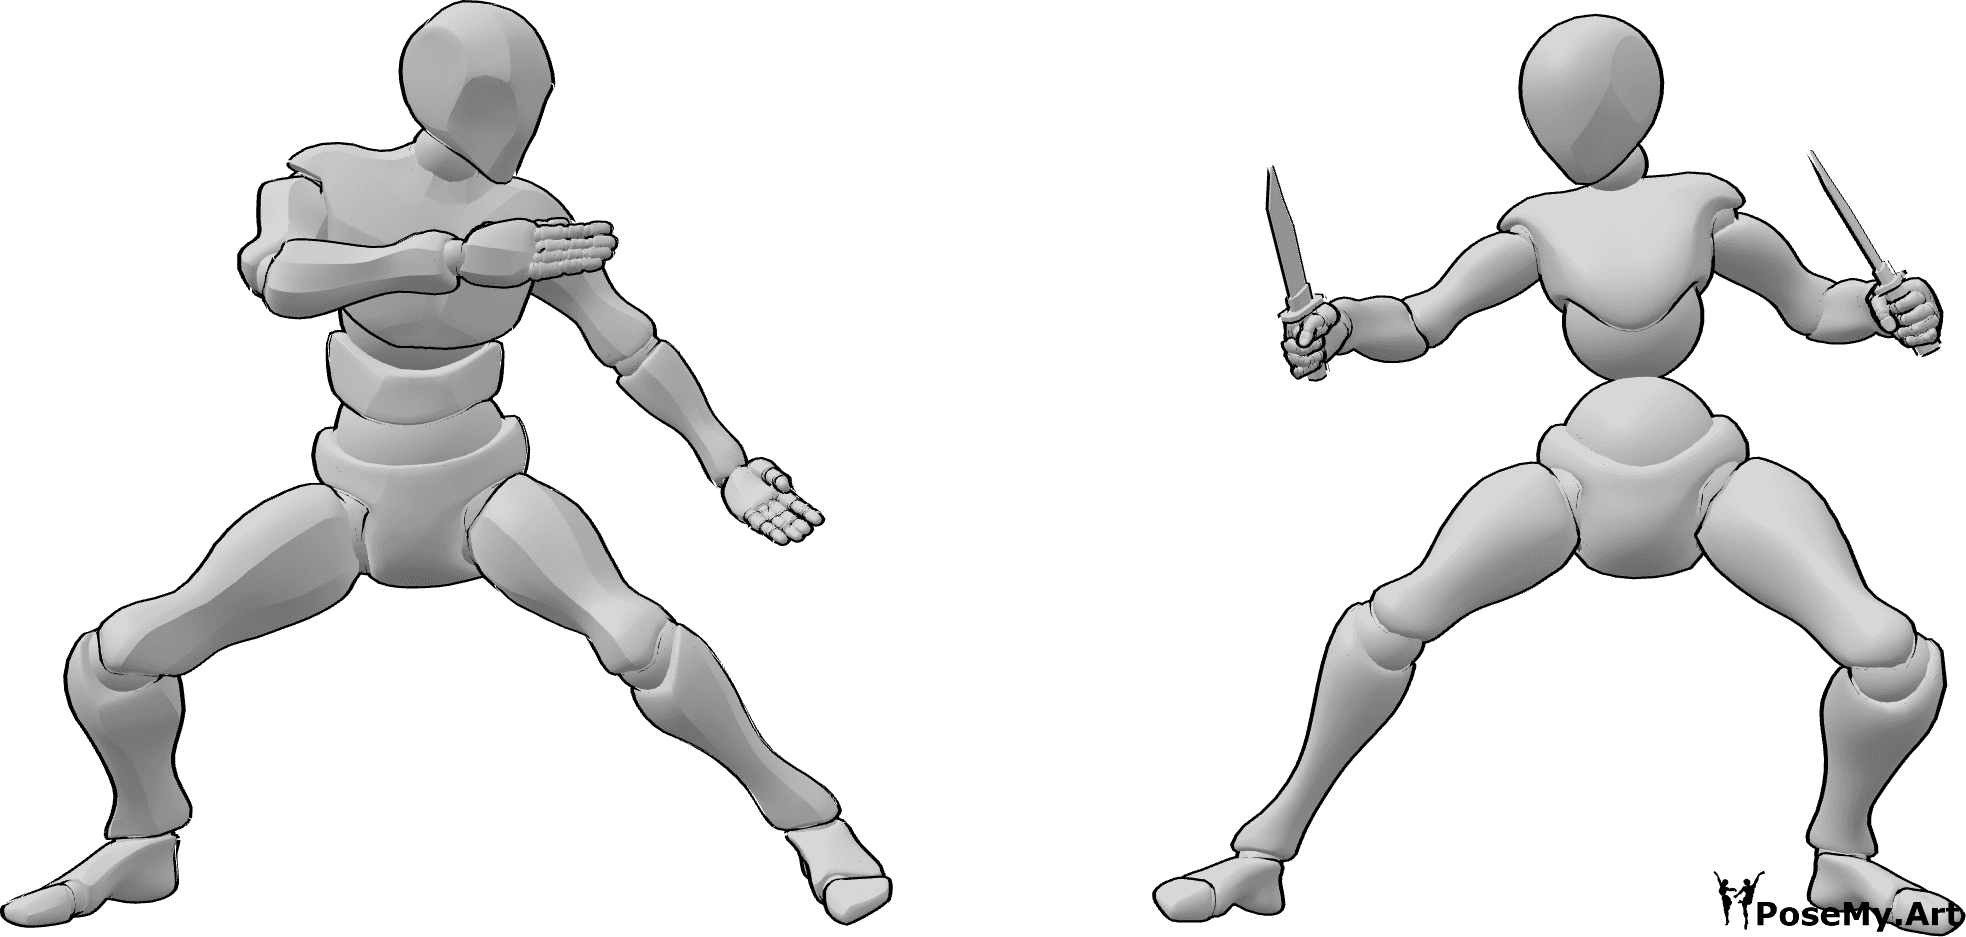 Référence des poses- Pose de combat au couteau - Une femme et un homme sont sur le point de se battre, la femme tient des couteaux.